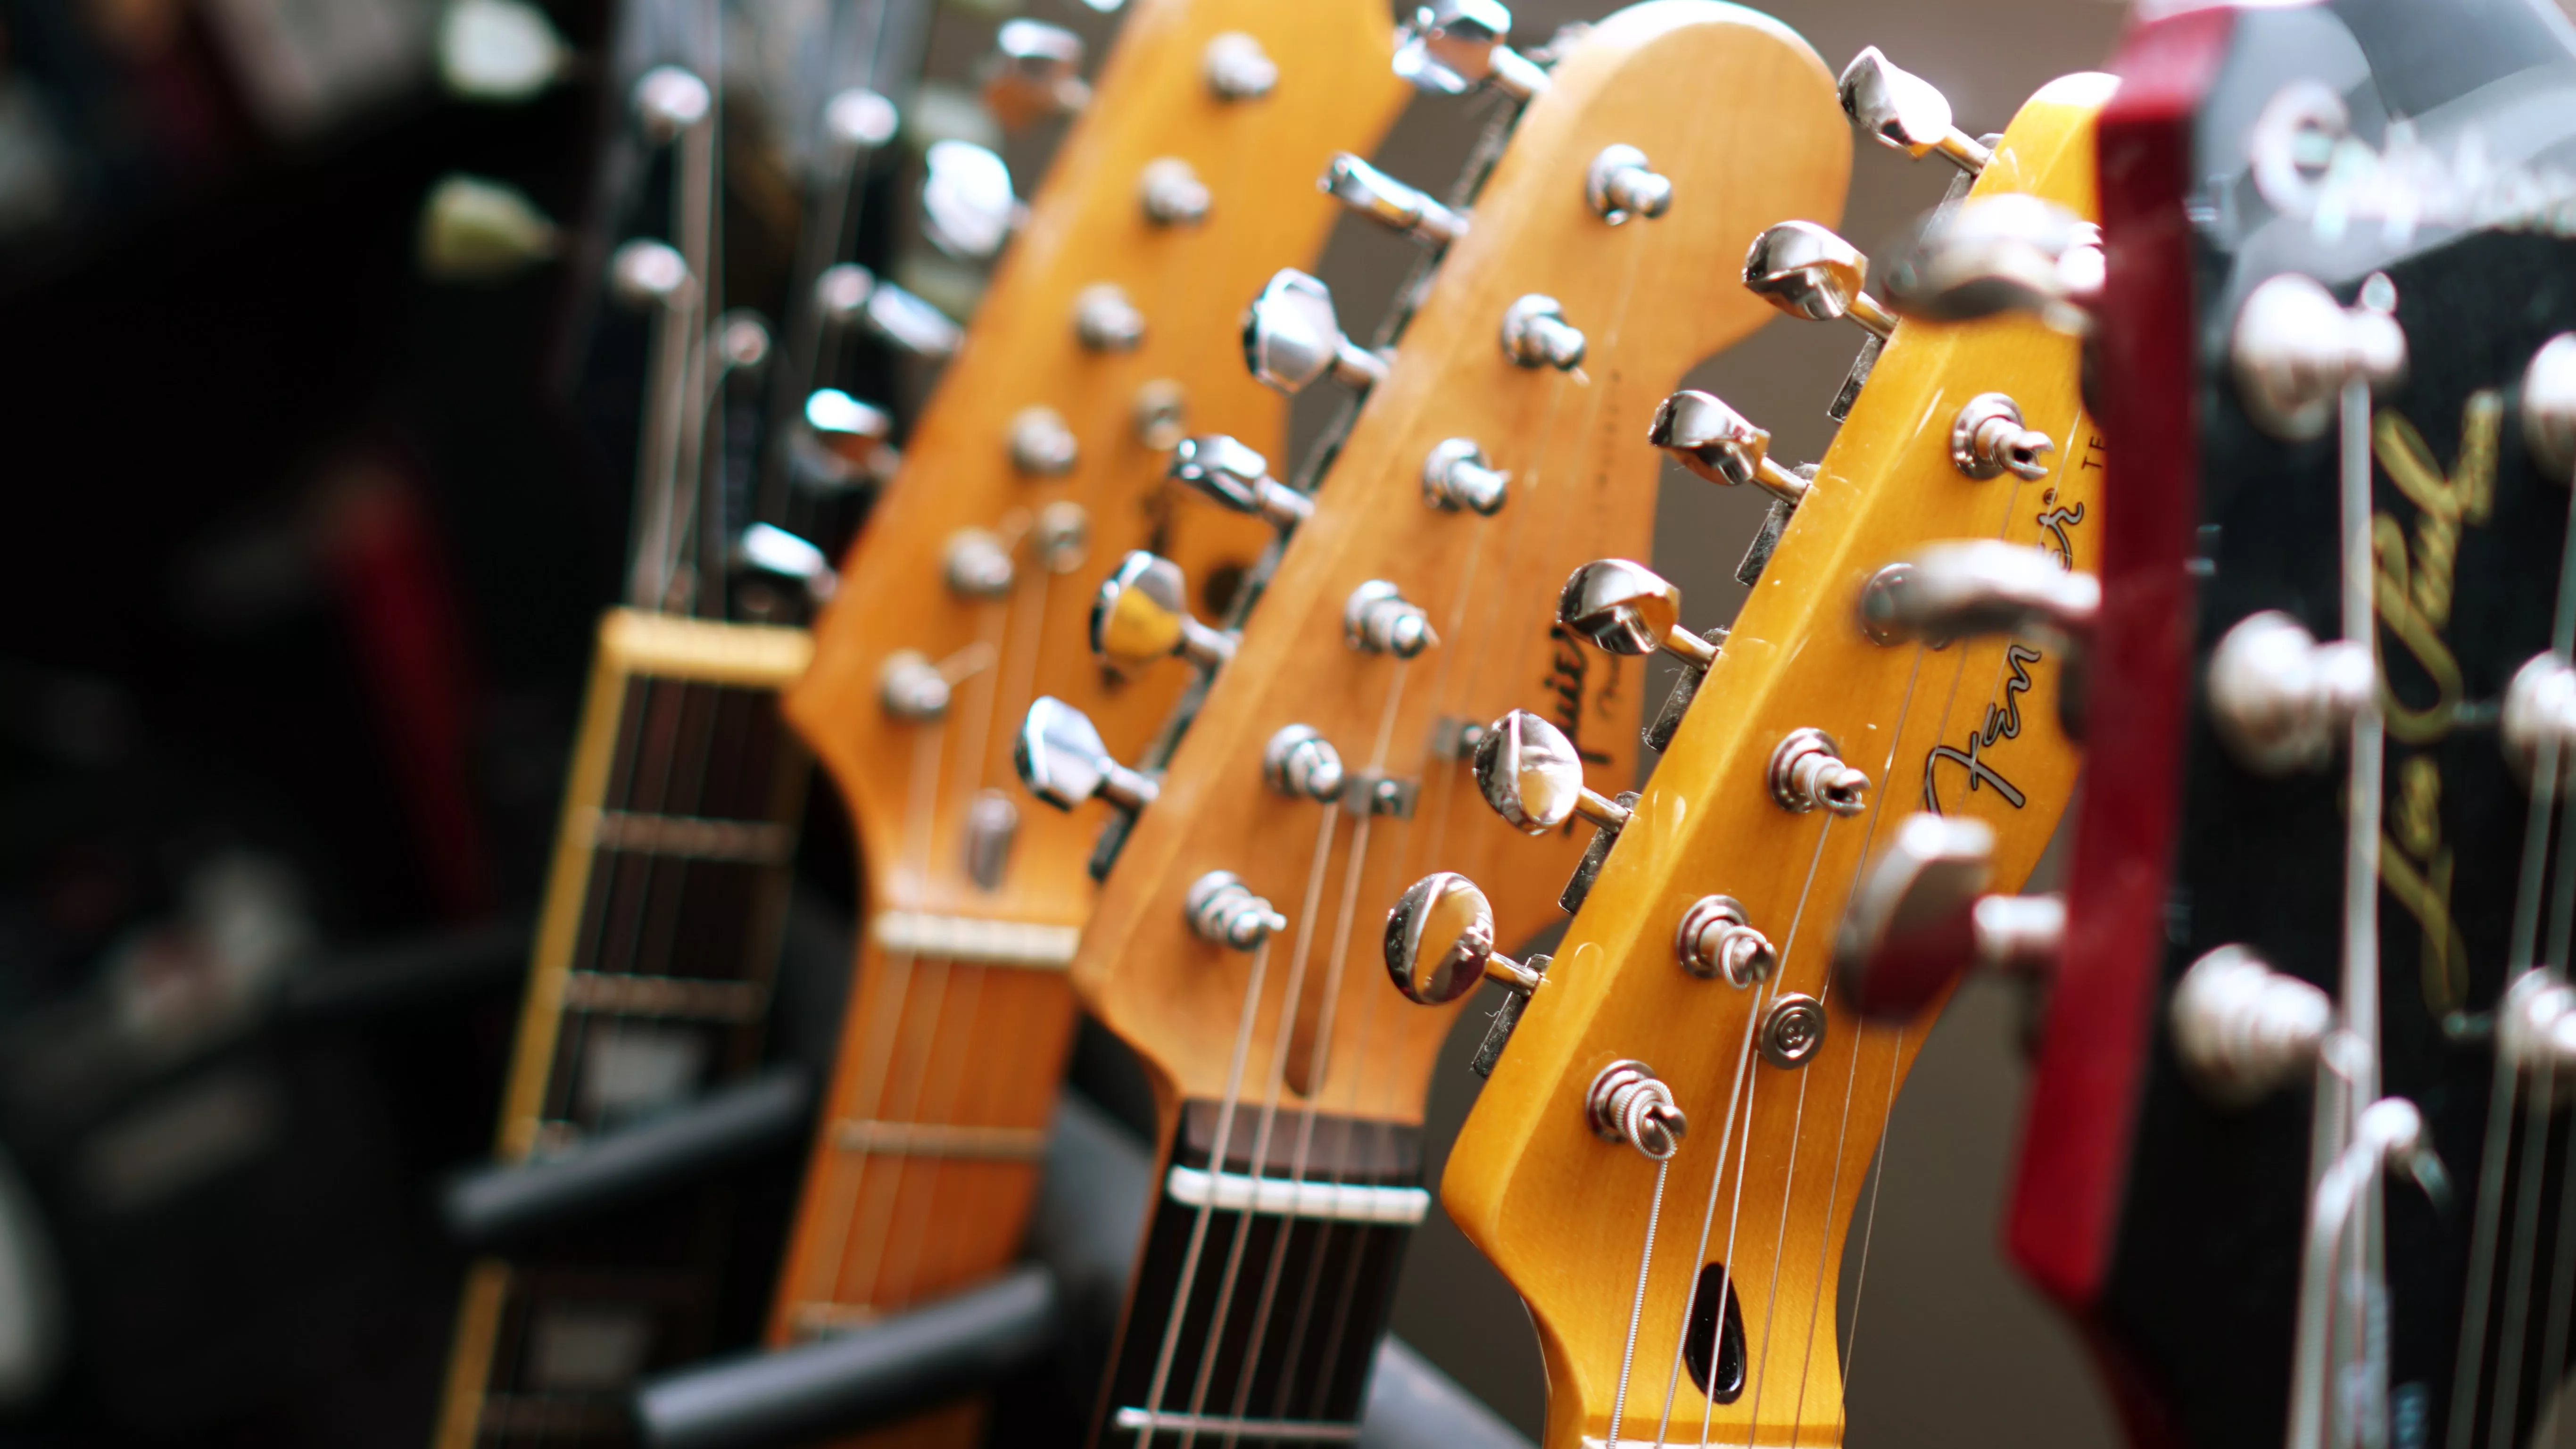 Comment Choisir sa Guitare Électrique ?